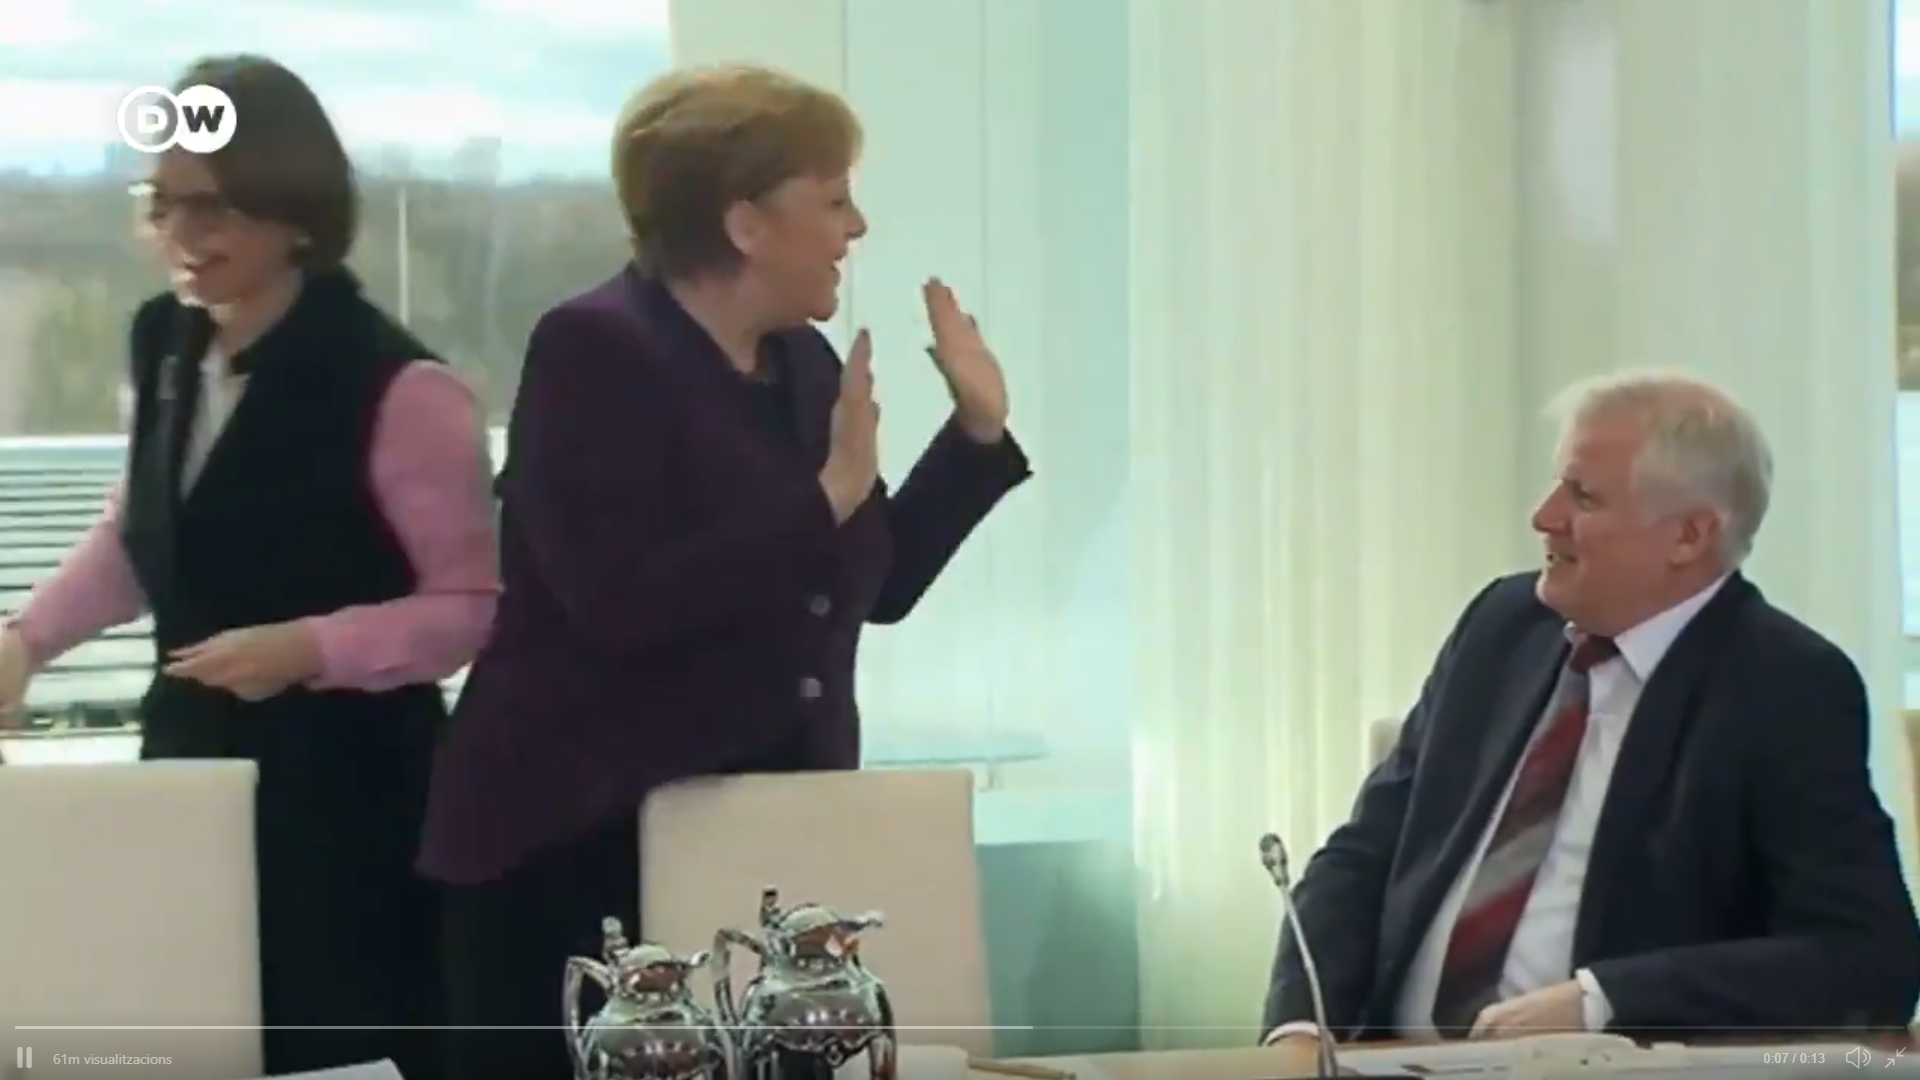 El ministro de Interior alemán niega el saludo a Merkel por el coronavirus